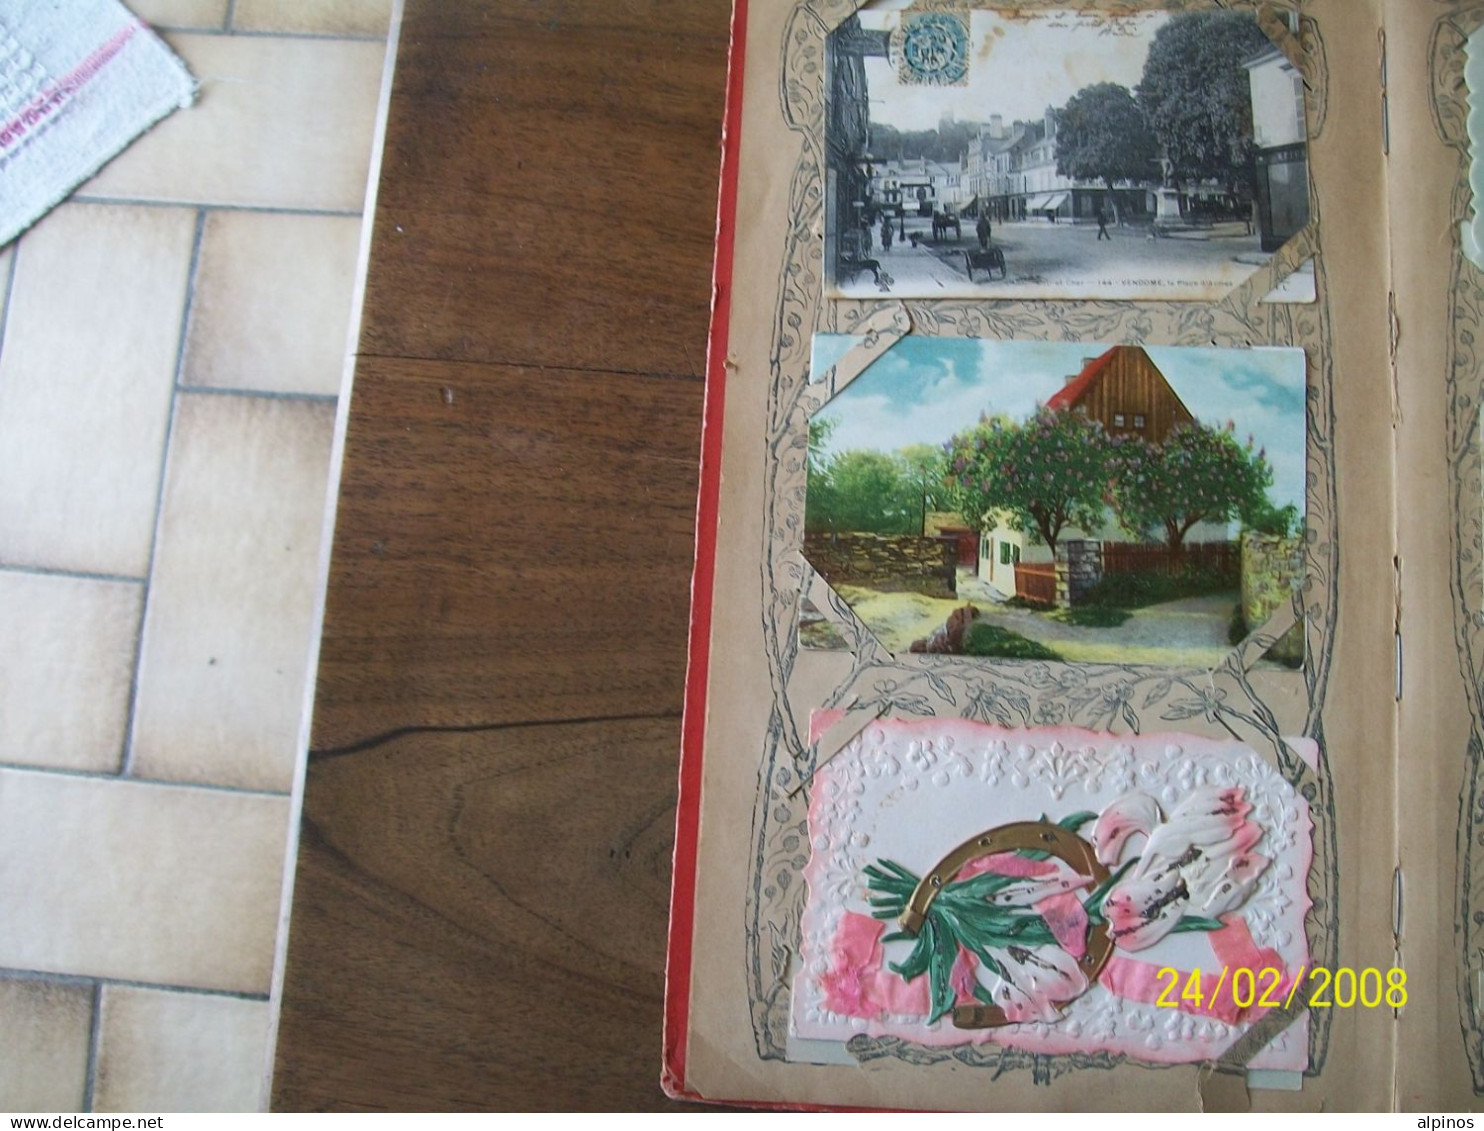 bel album de cartes postales anciennes